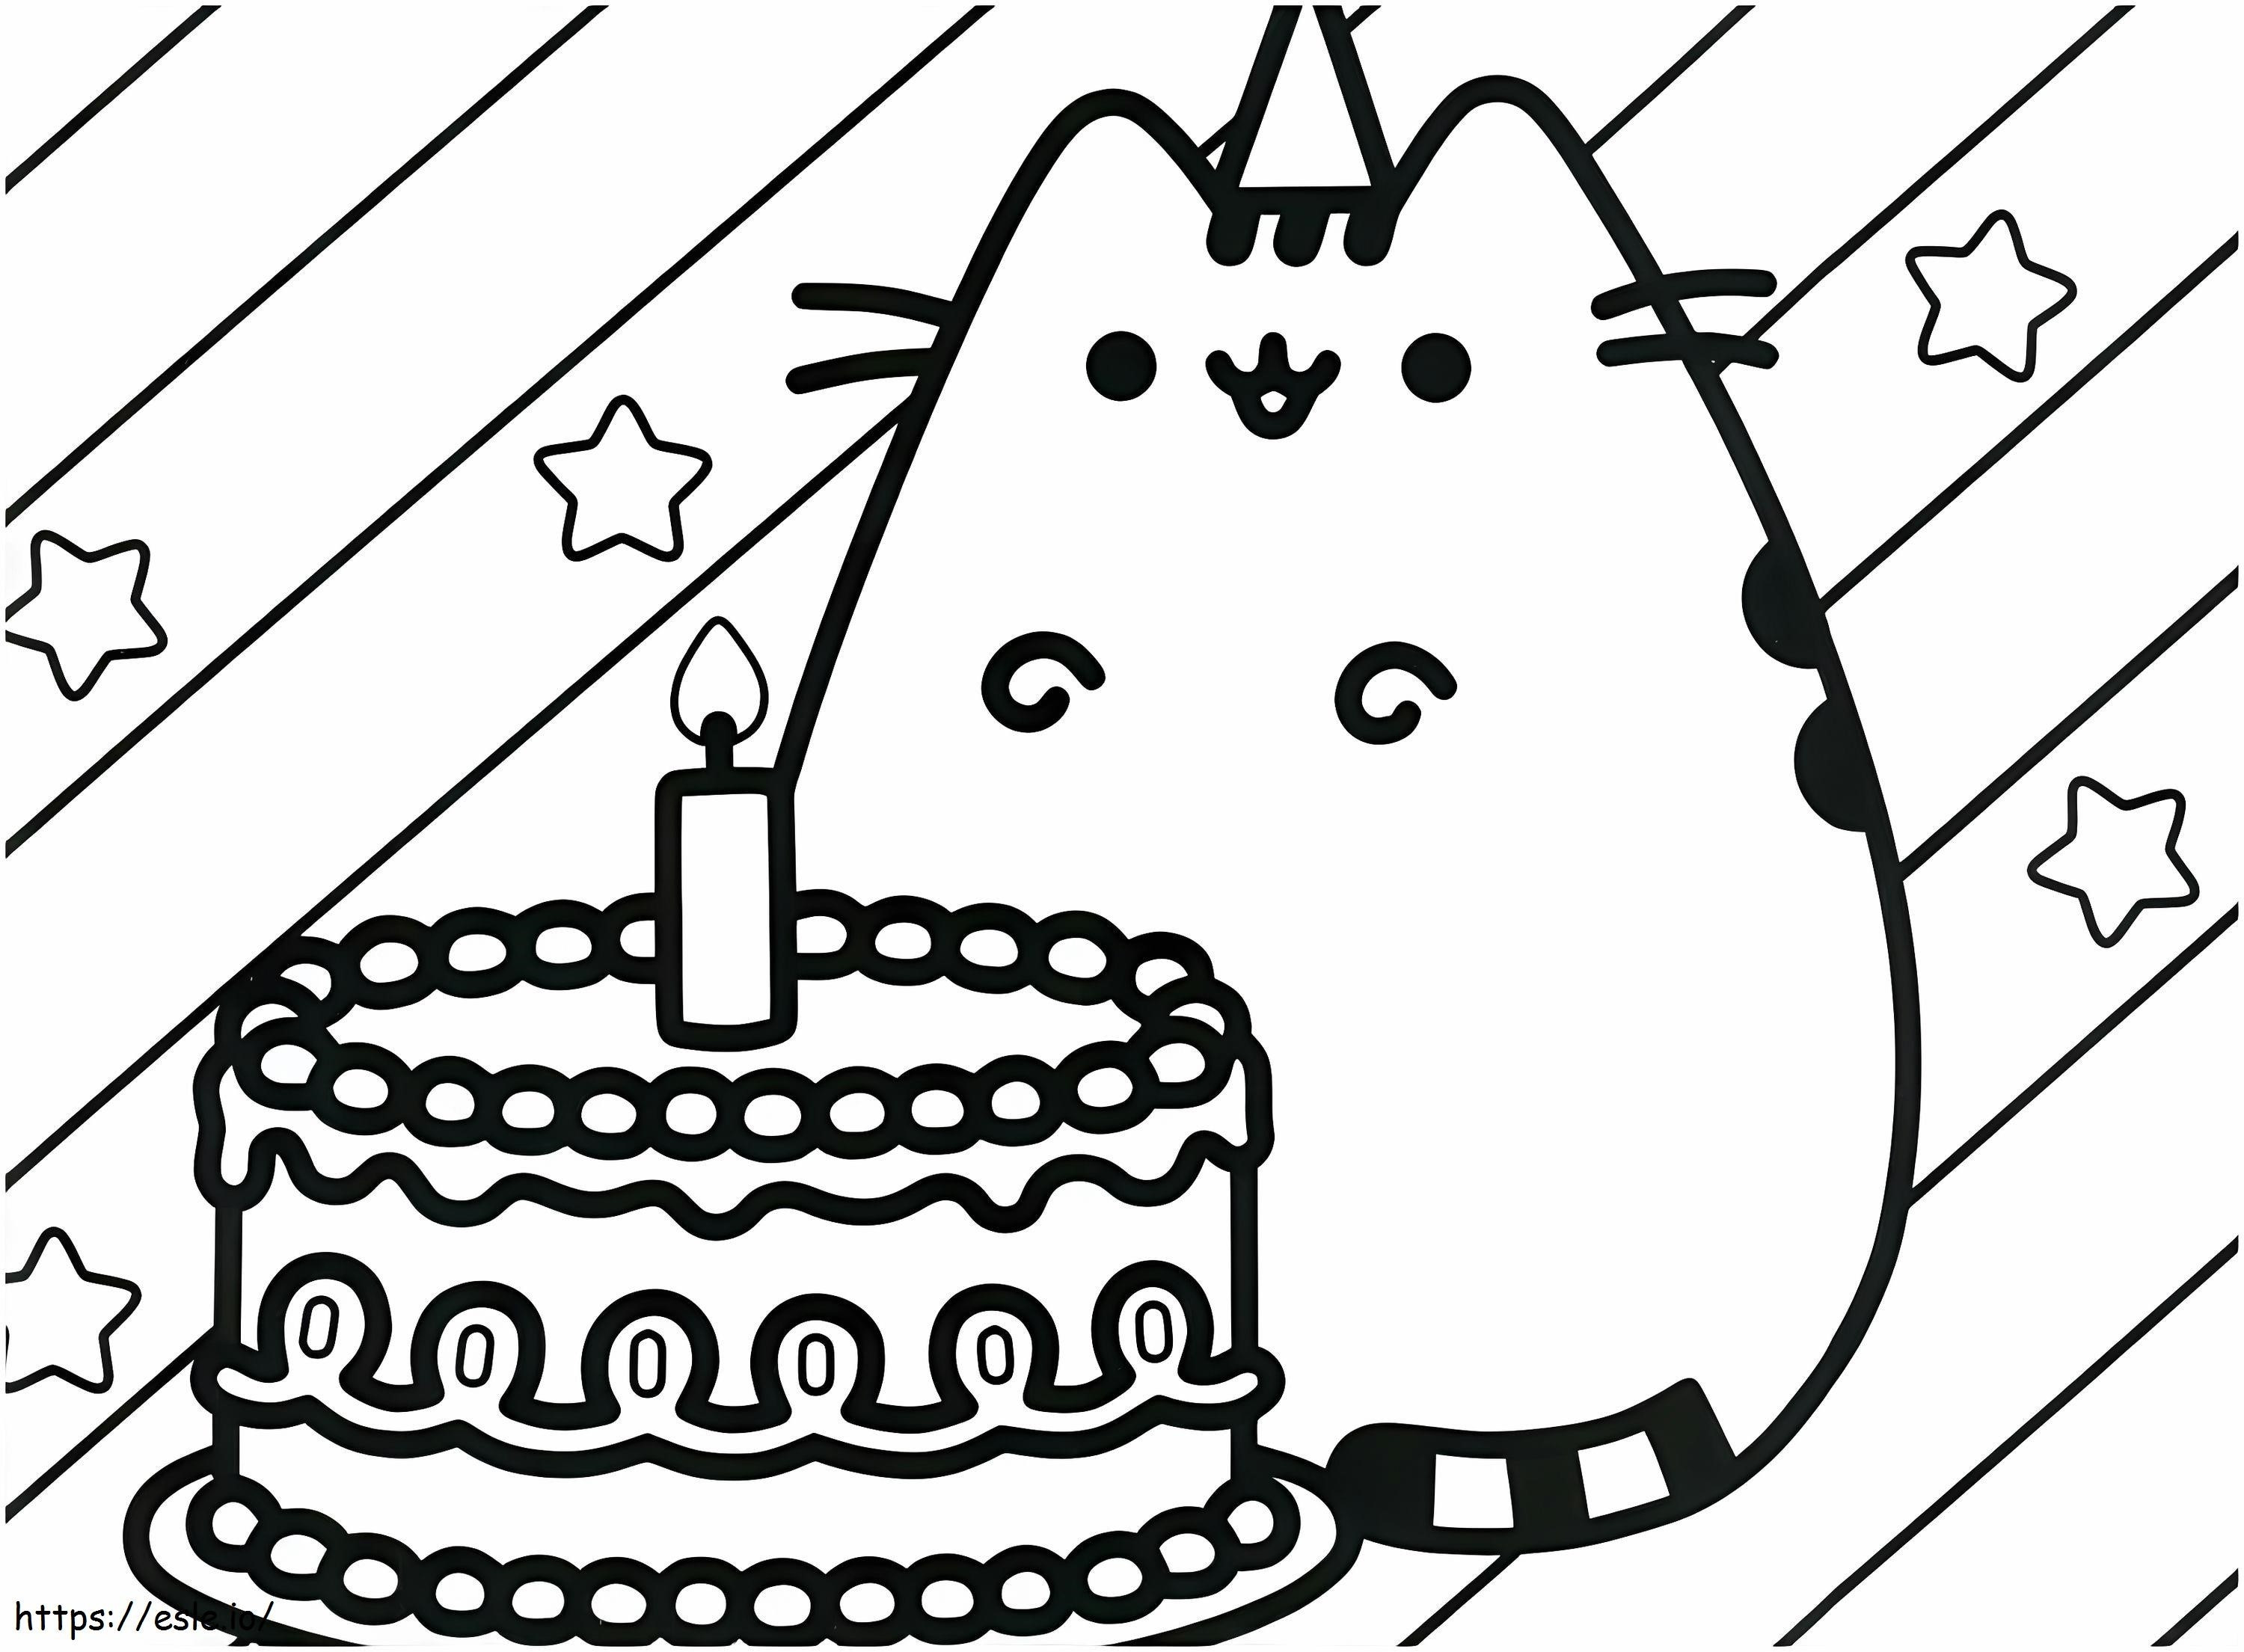 Pusheen com bolo de aniversário para colorir